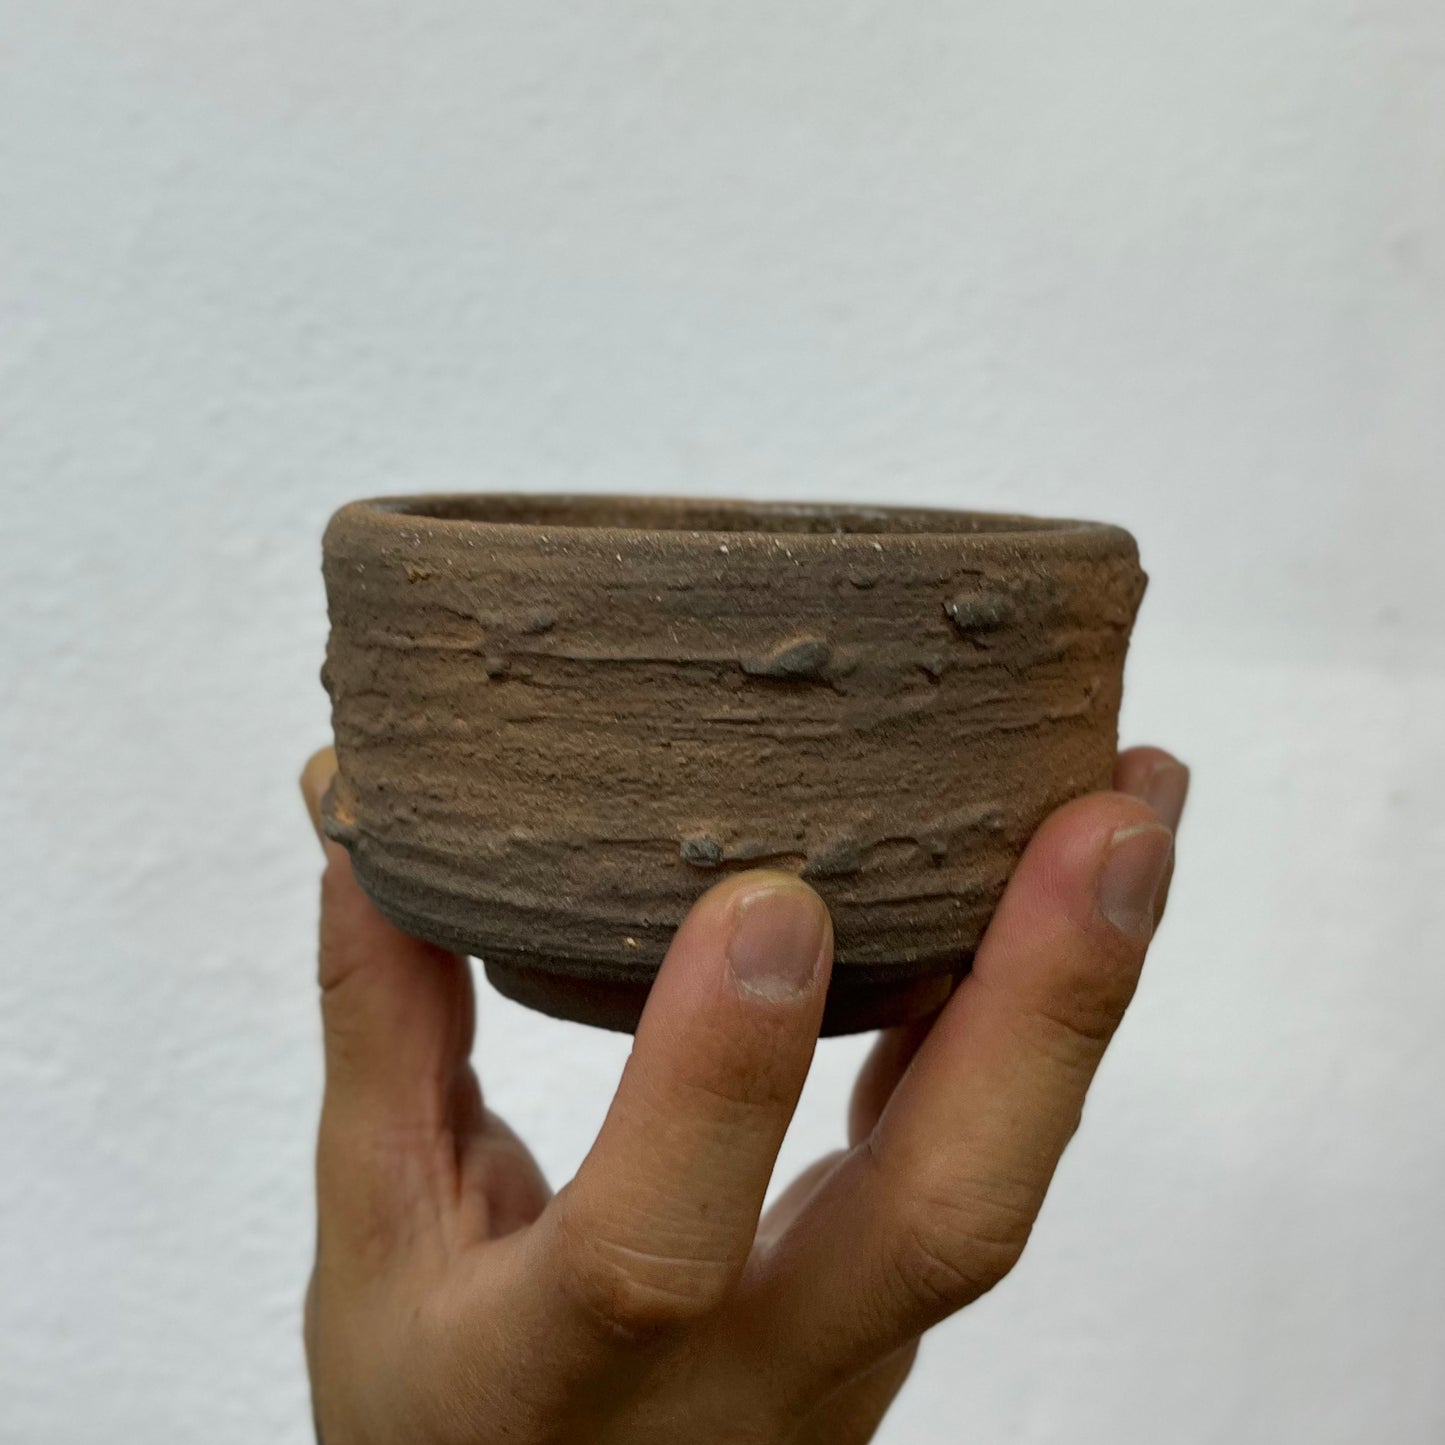 Wabi Sabi Ceramic Mug by Derrumbe